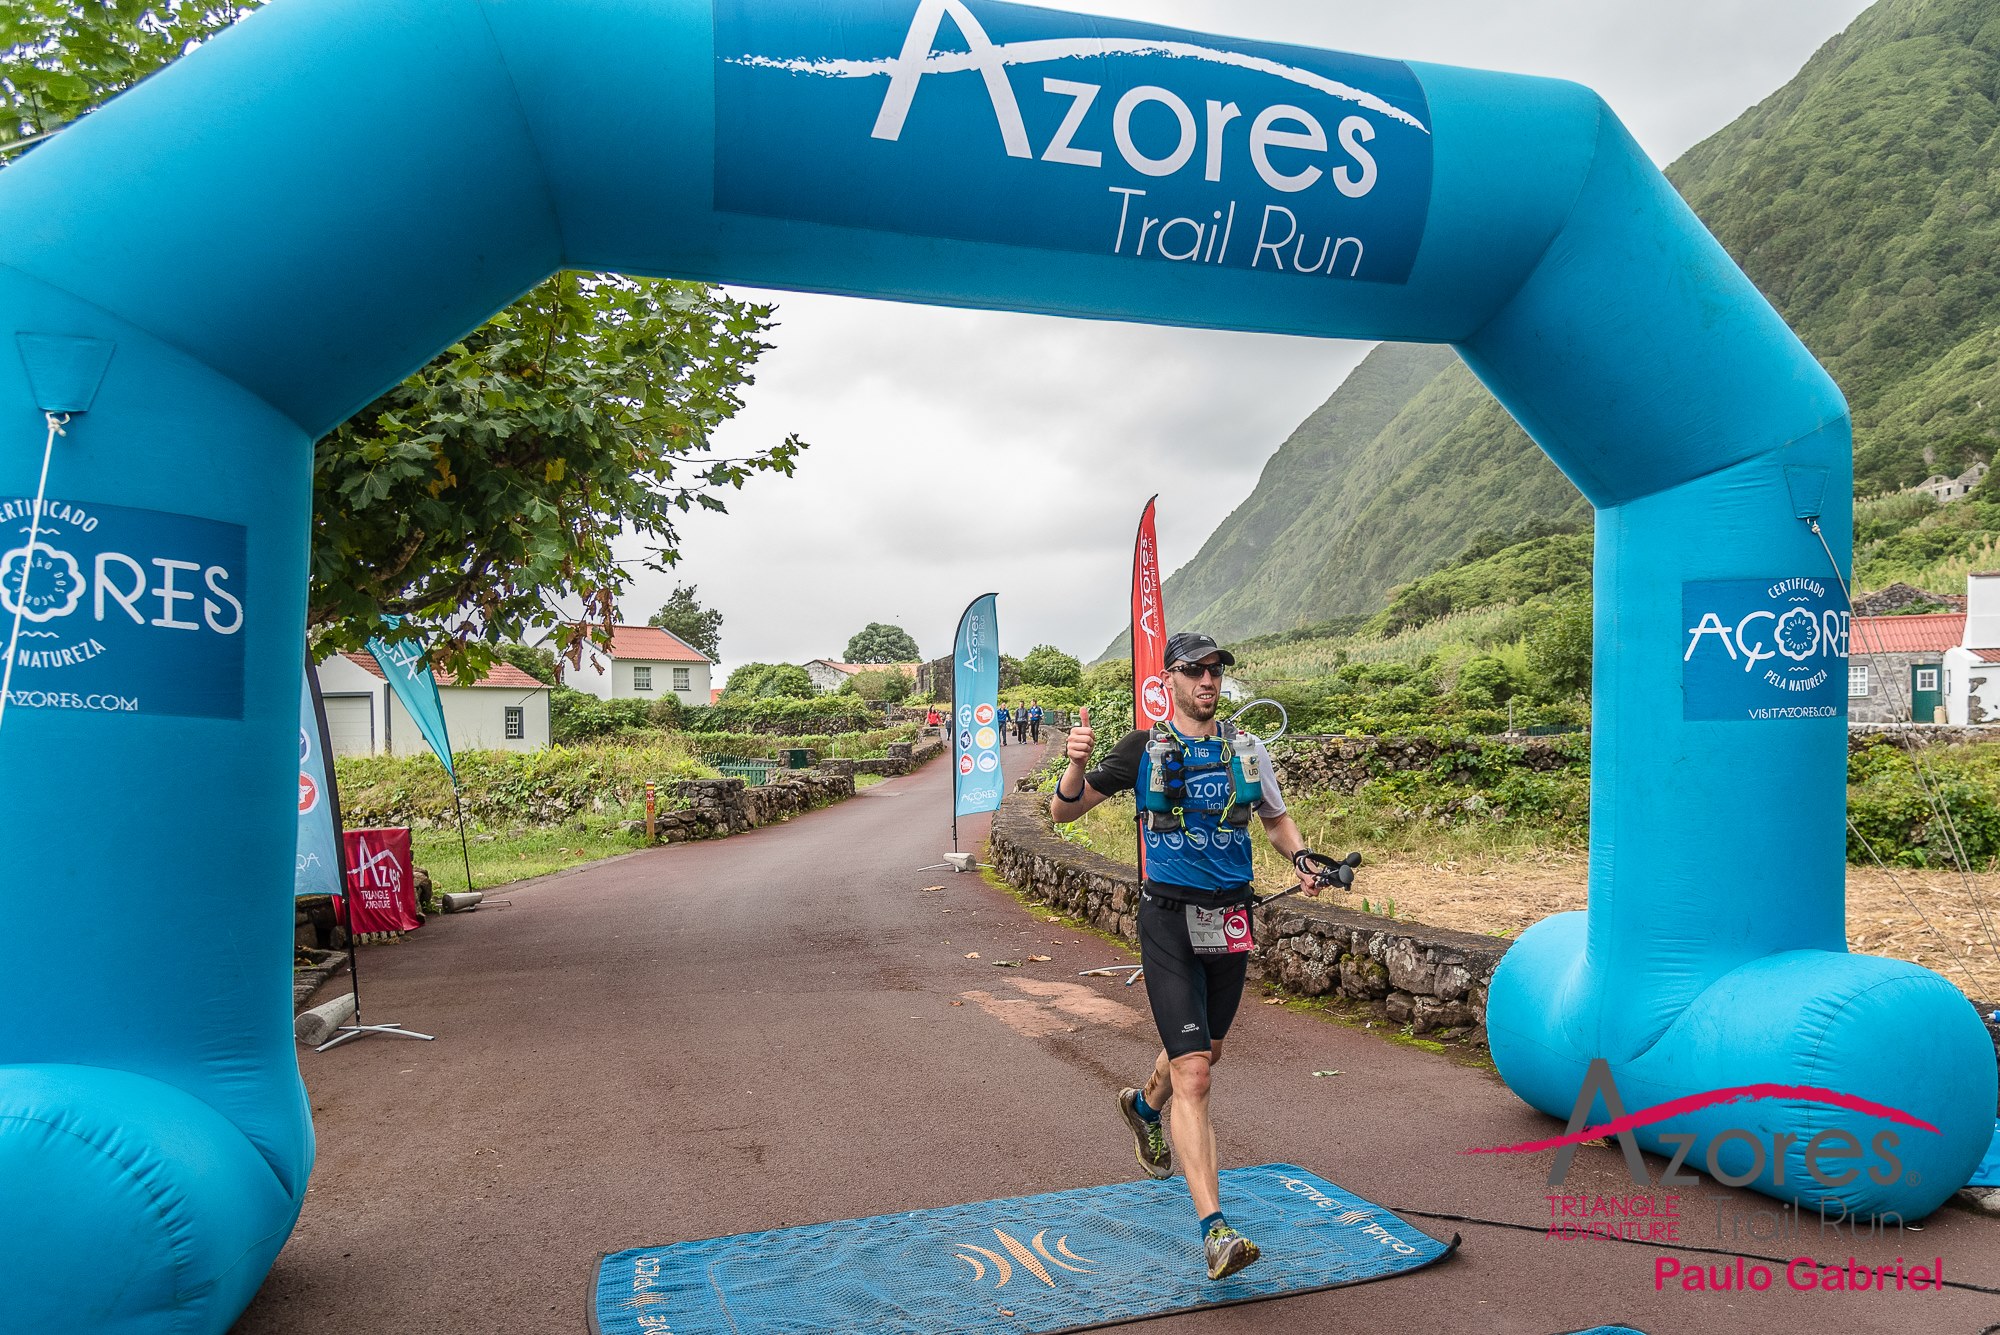 Azores Trail Run Triangle Adventure – Part 2